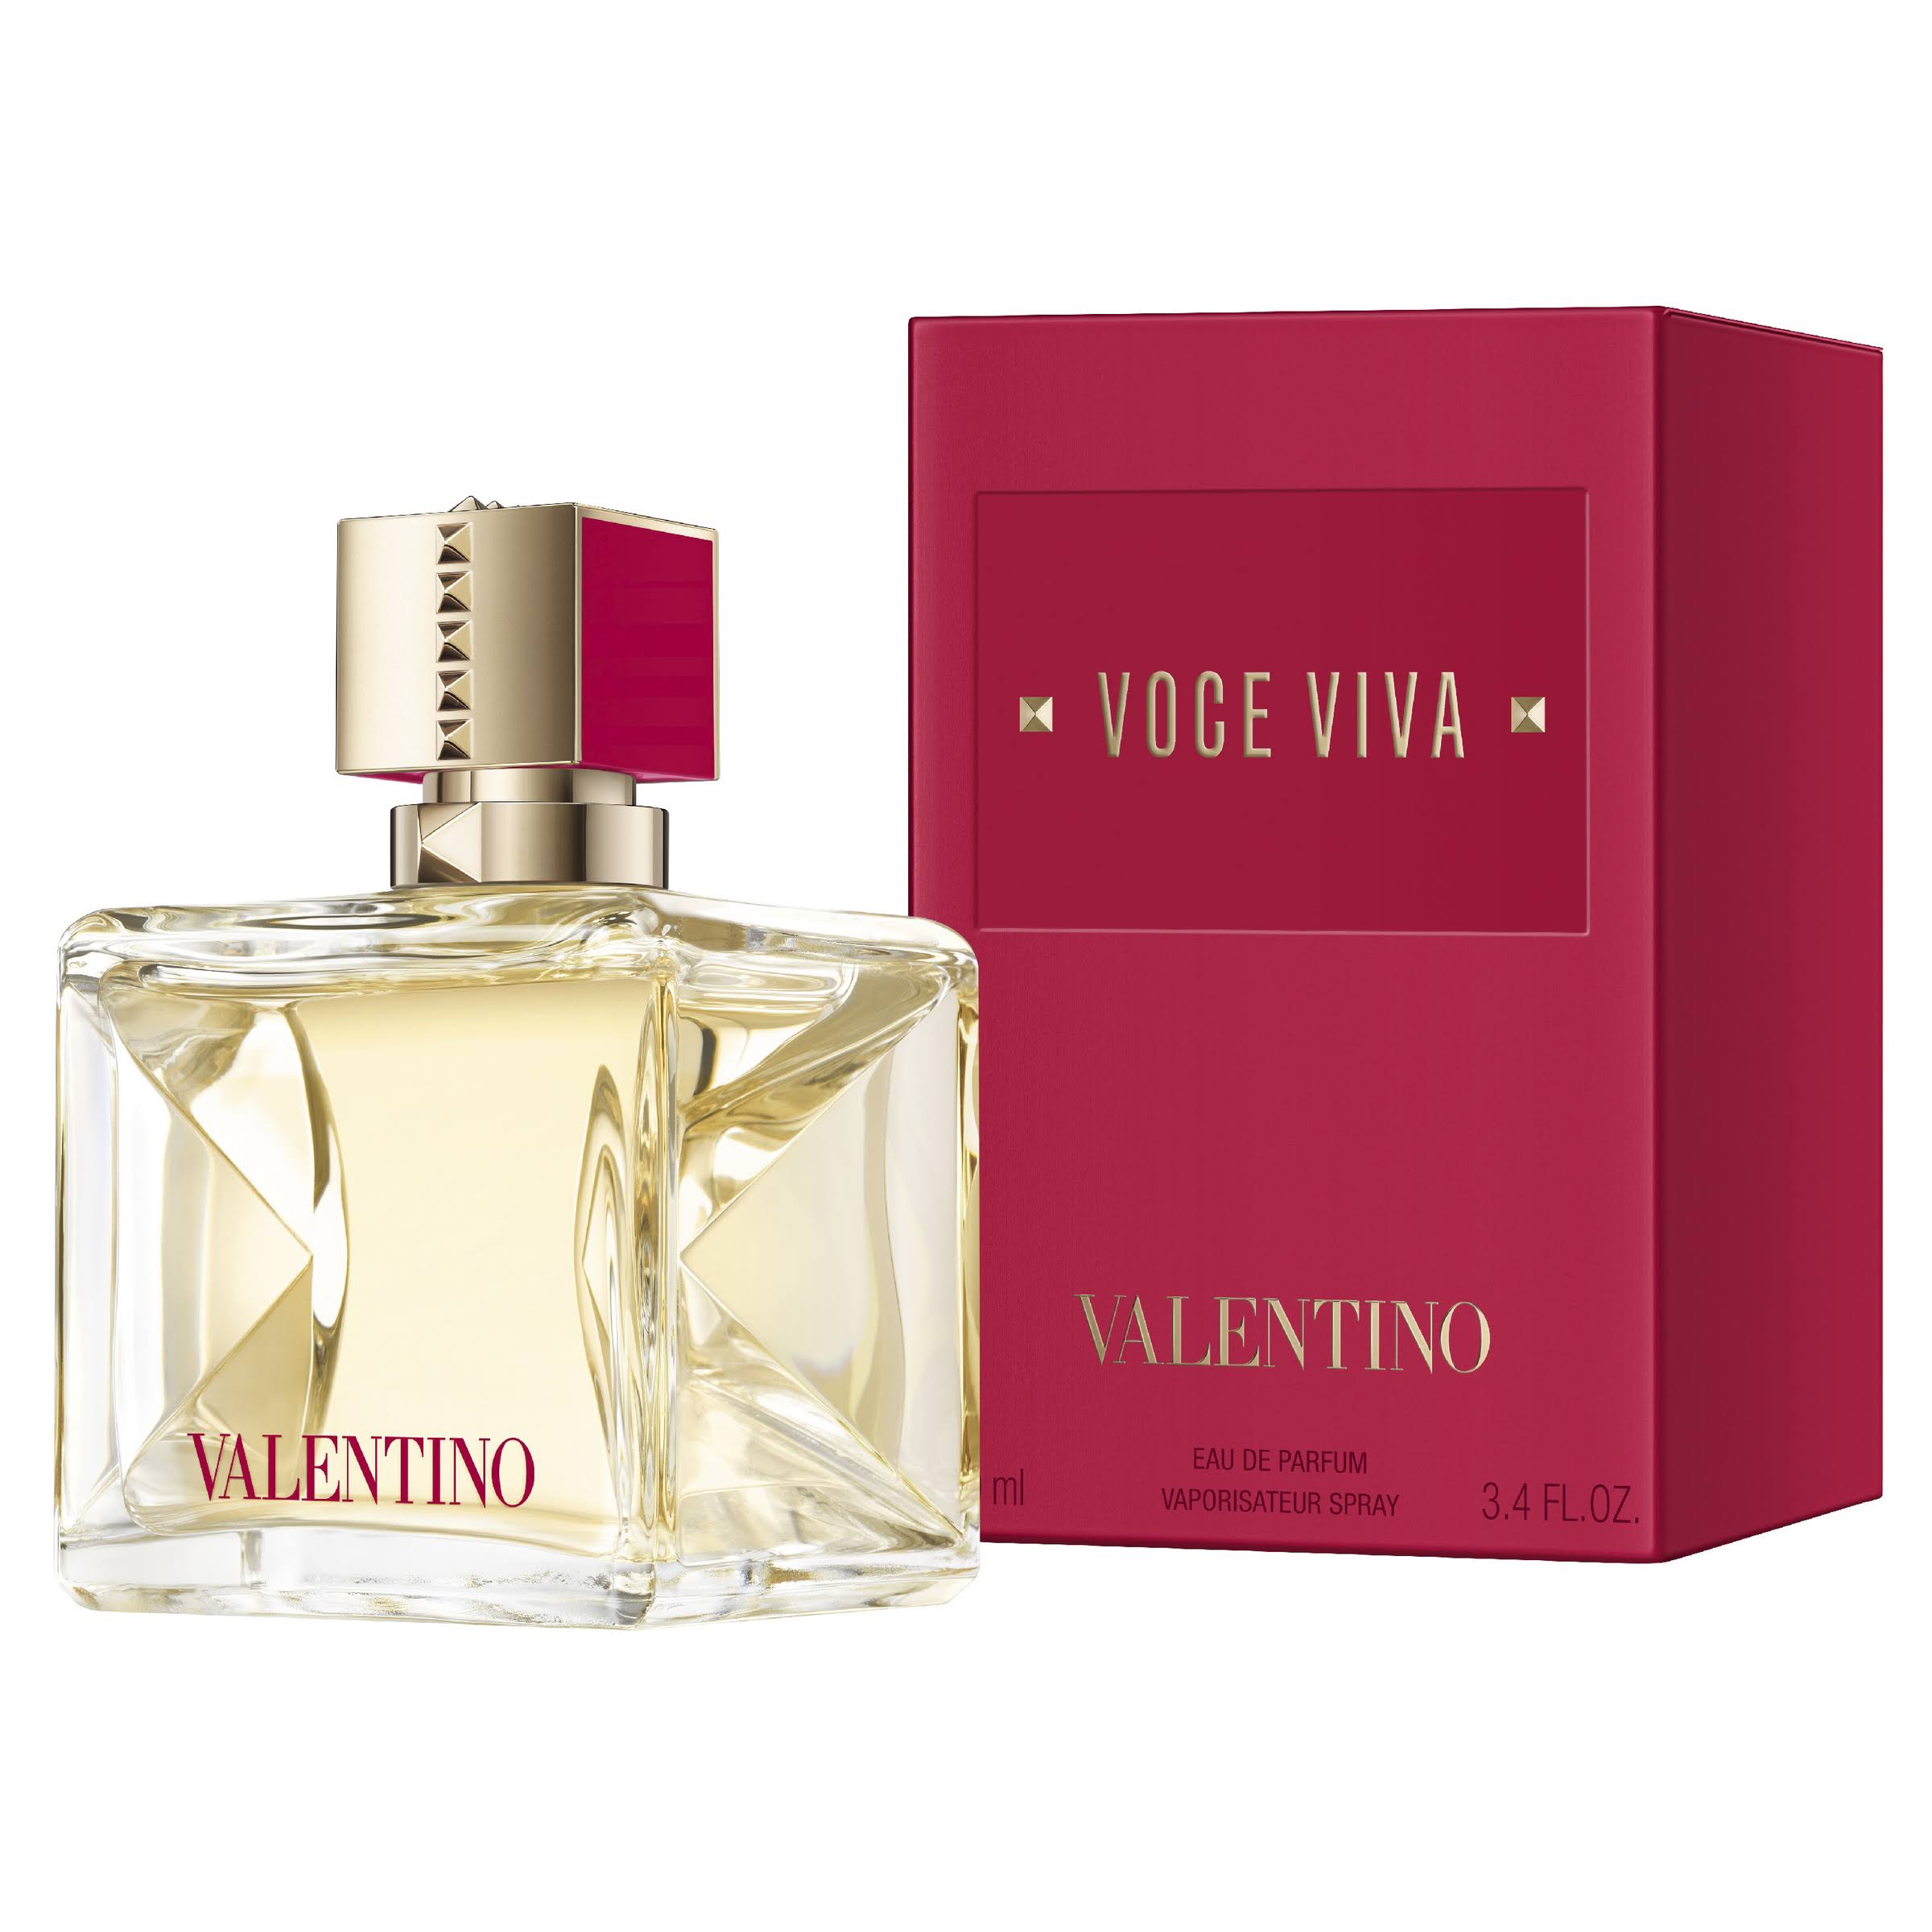 Voce Viva By Valentino For Women 3.4 oz Eau De Parfum Spray